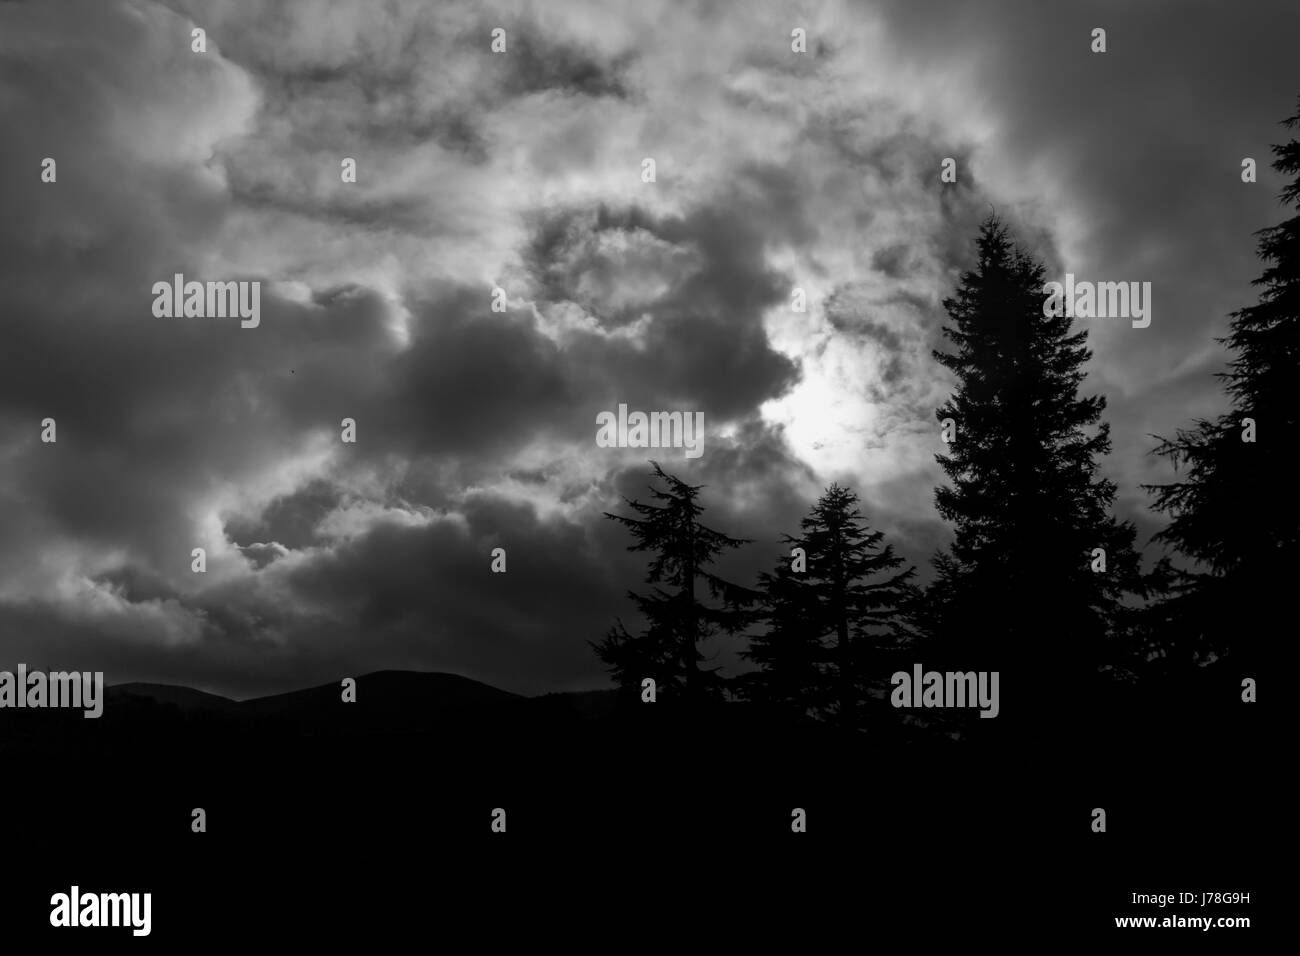 Une photo monochrome avec silhouettes de sapins avec un ciel dramatique comme arrière-plan. Banque D'Images